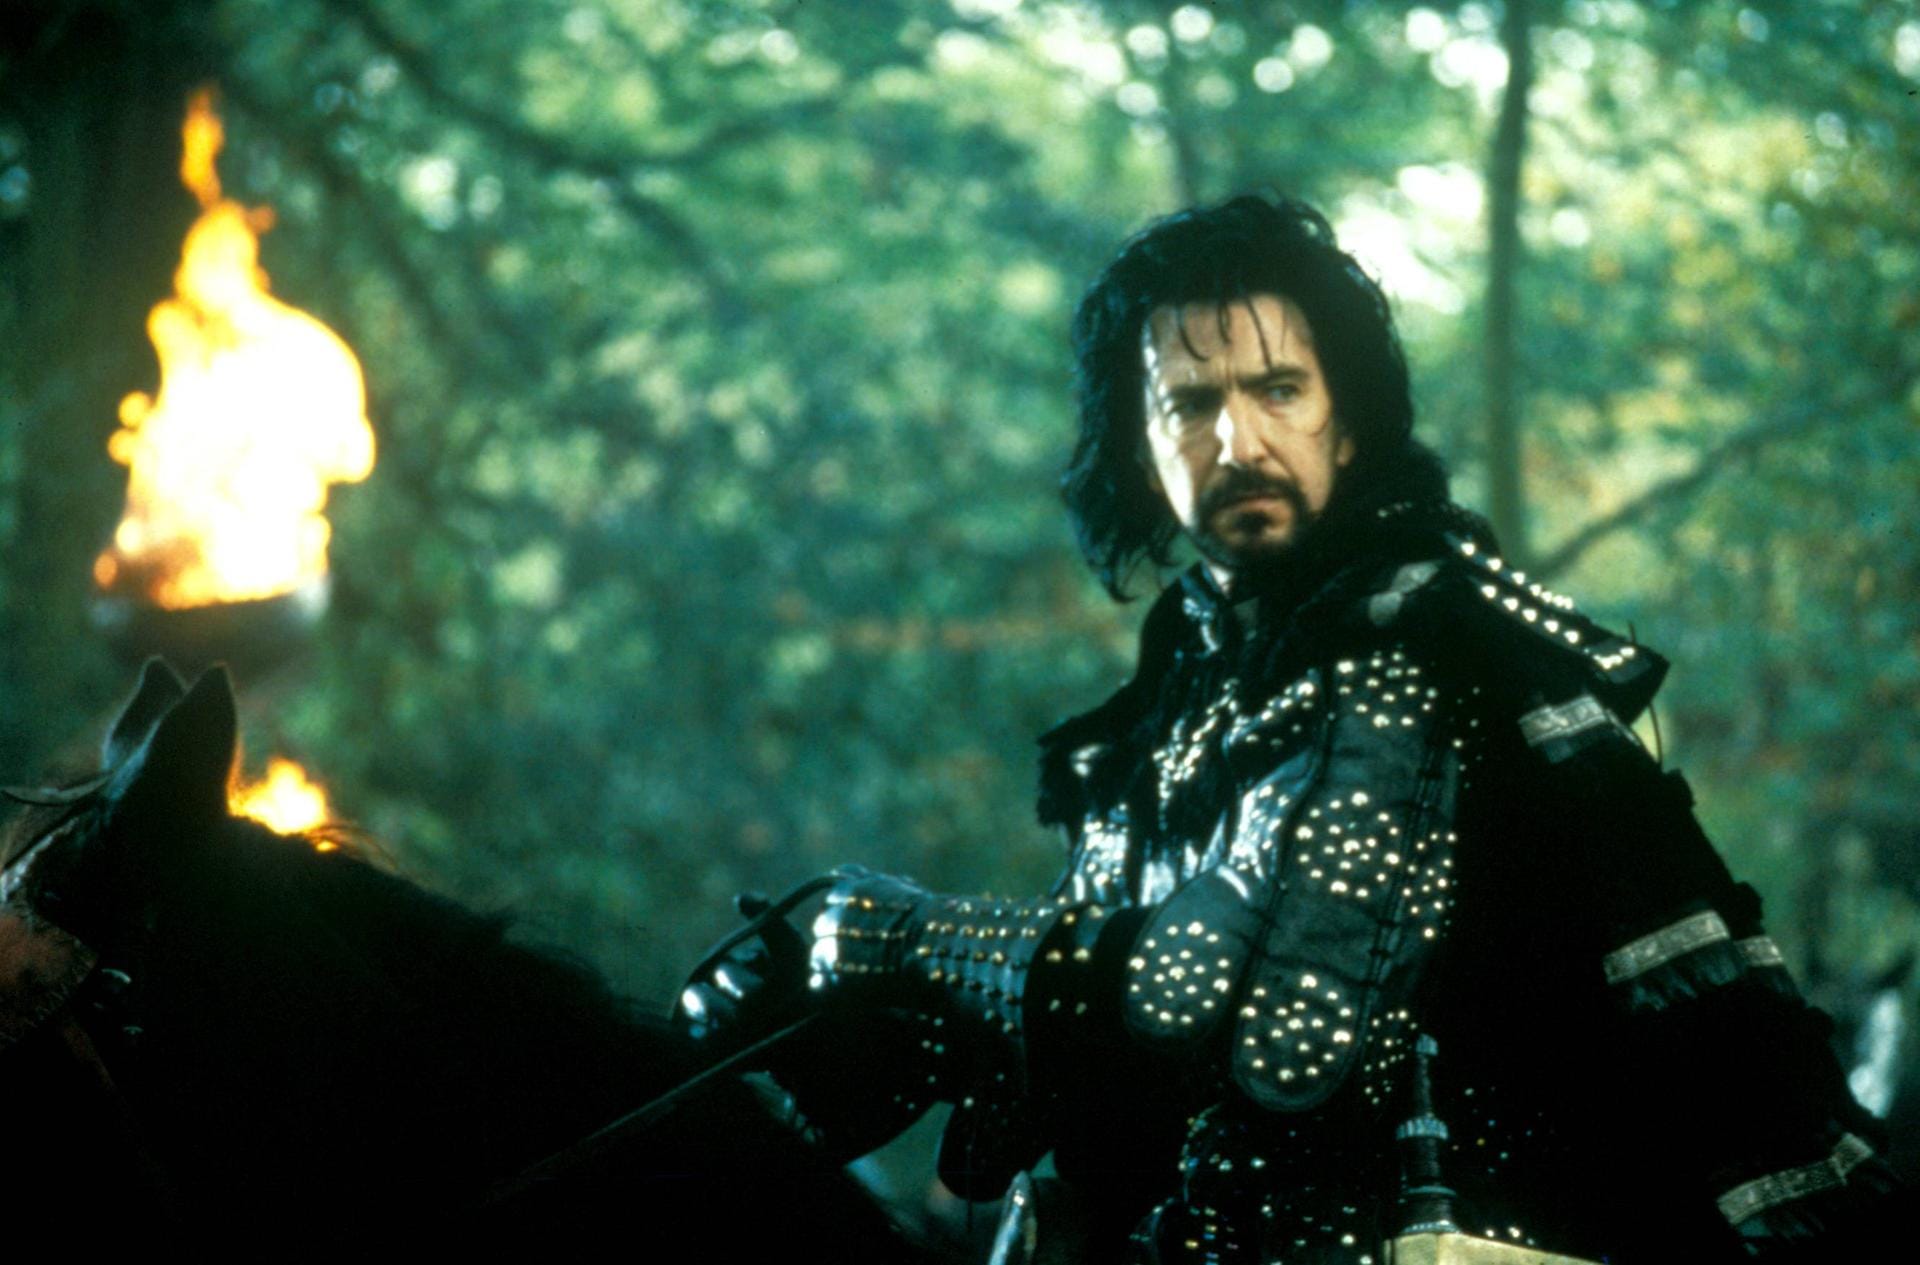 Danach war der Brite als Bösewicht gefragt. So spielte er unter anderem 1991 den Sheriff von Nottingham in Kevin Costners "Robin Hood - König der Diebe".